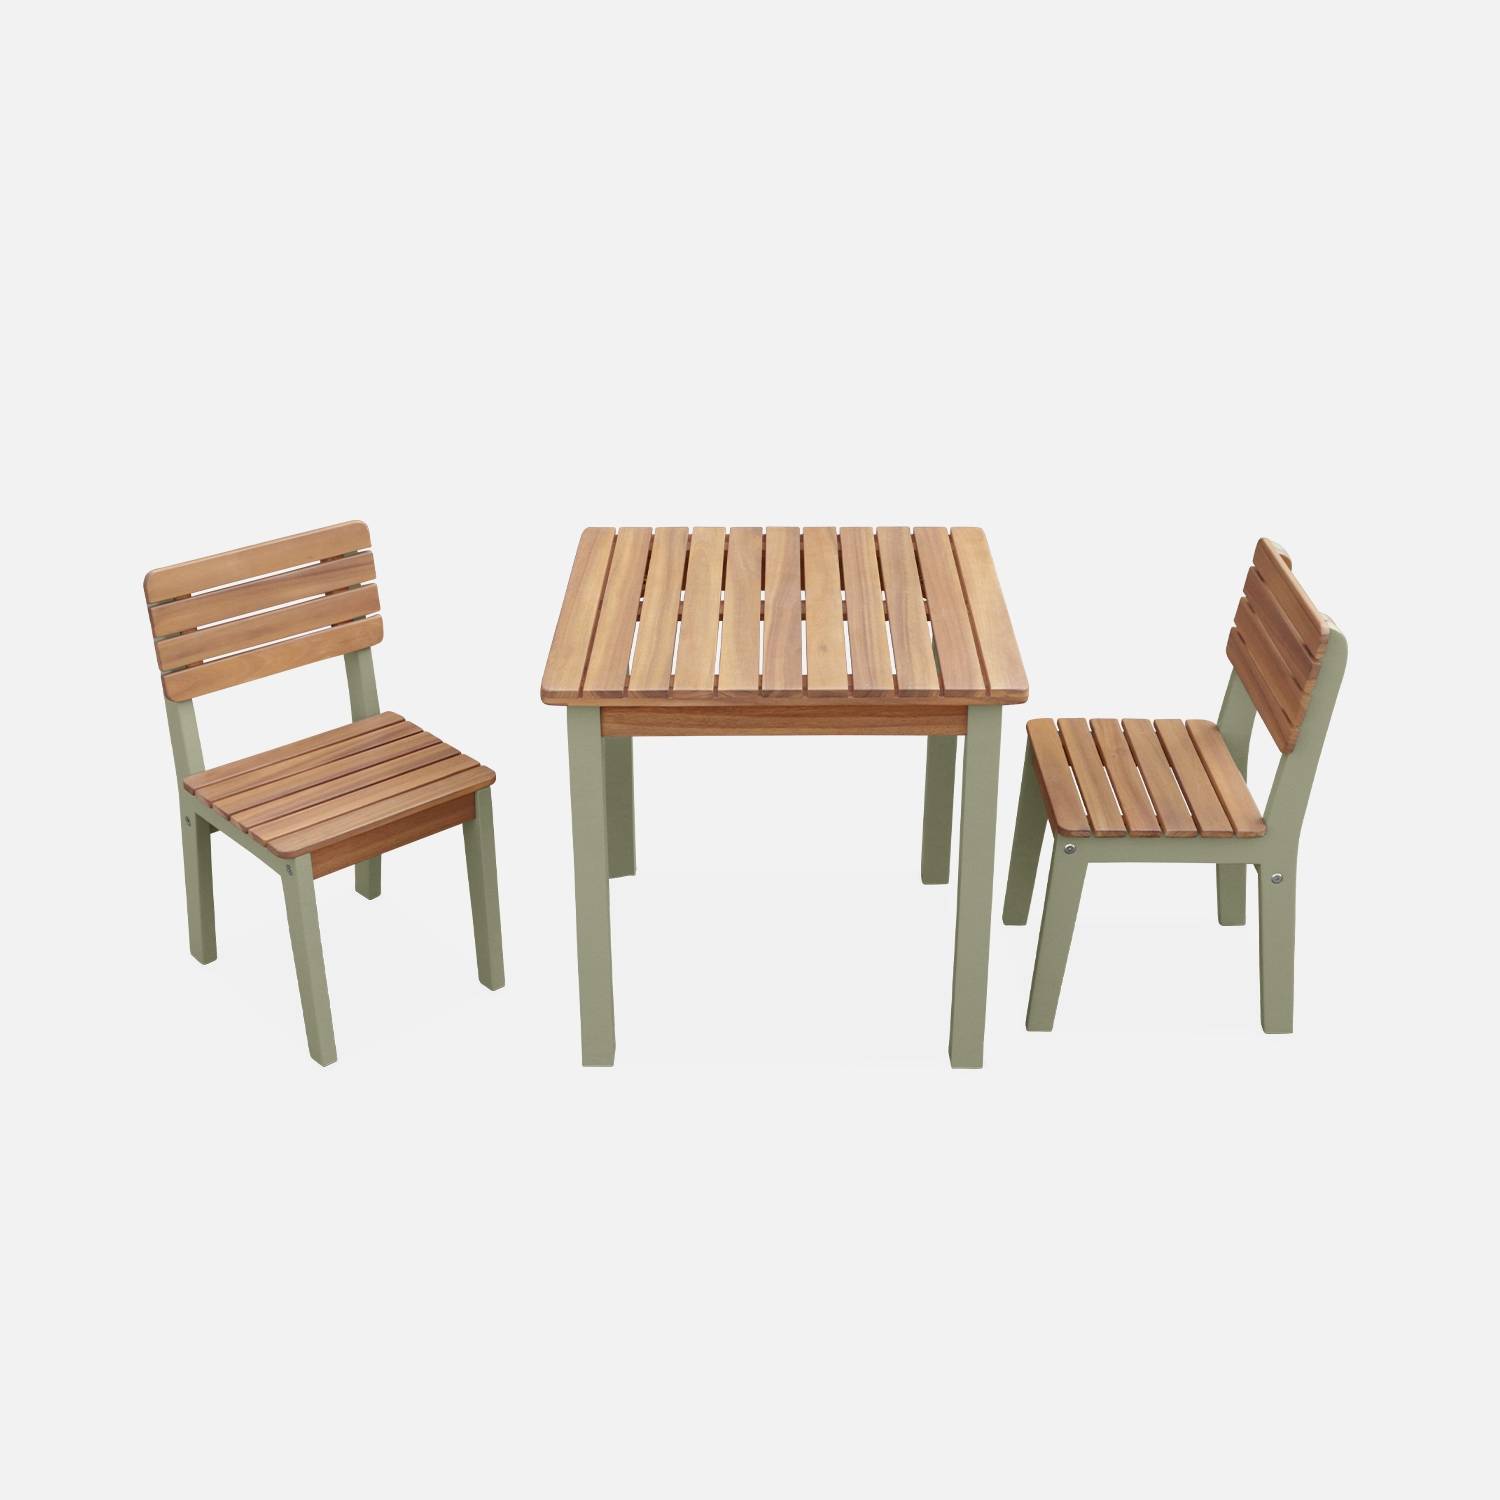 Kindertisch mit 2 Stühlen aus Holz, graugrün I sweeek